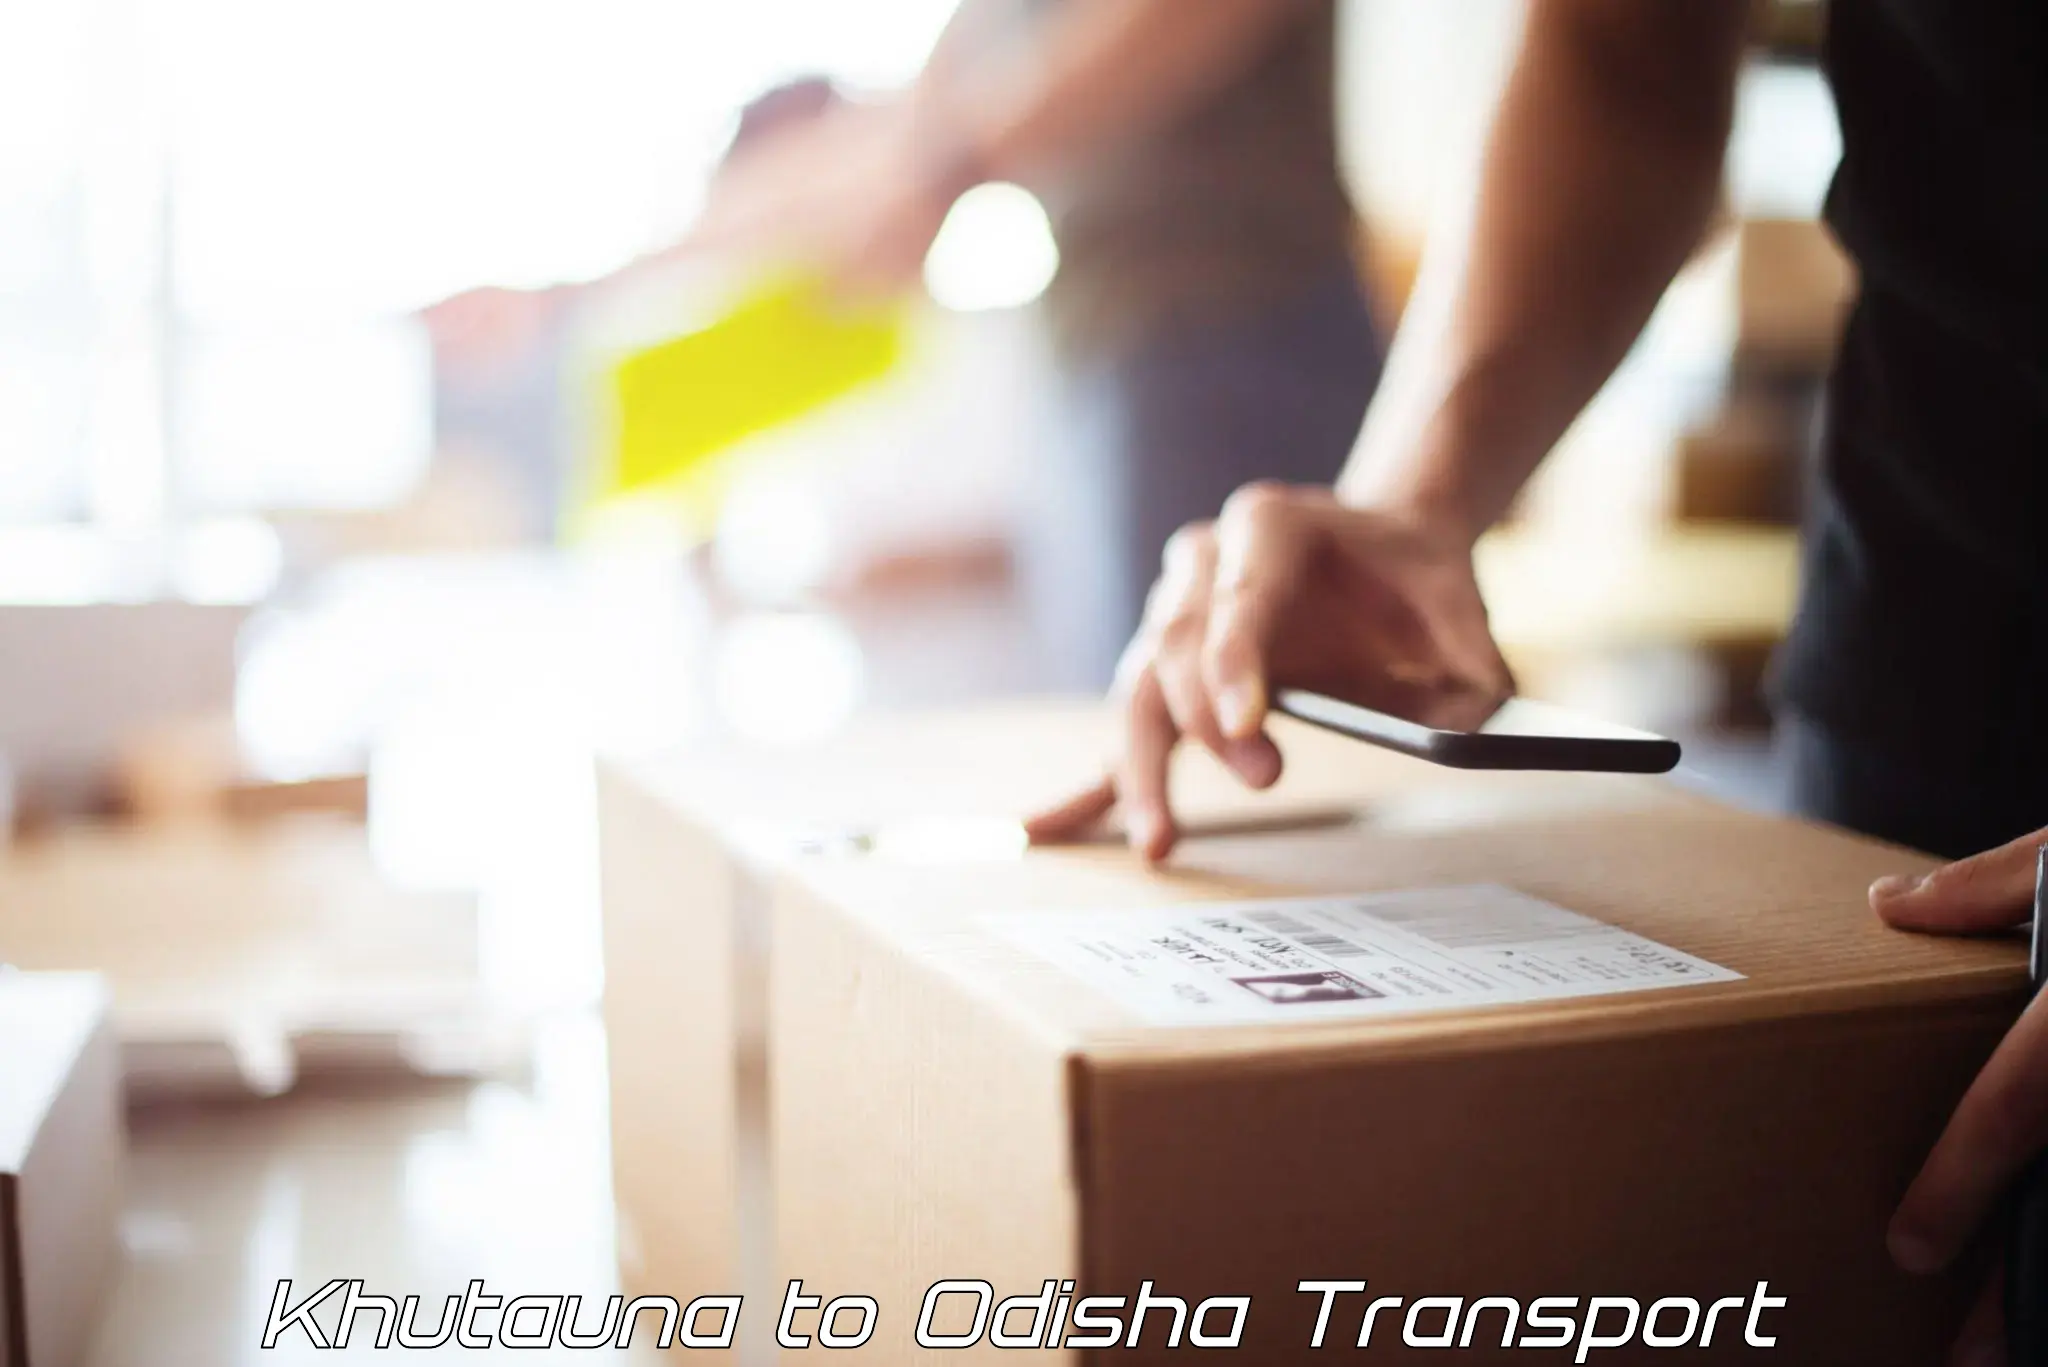 Container transport service Khutauna to Kesinga